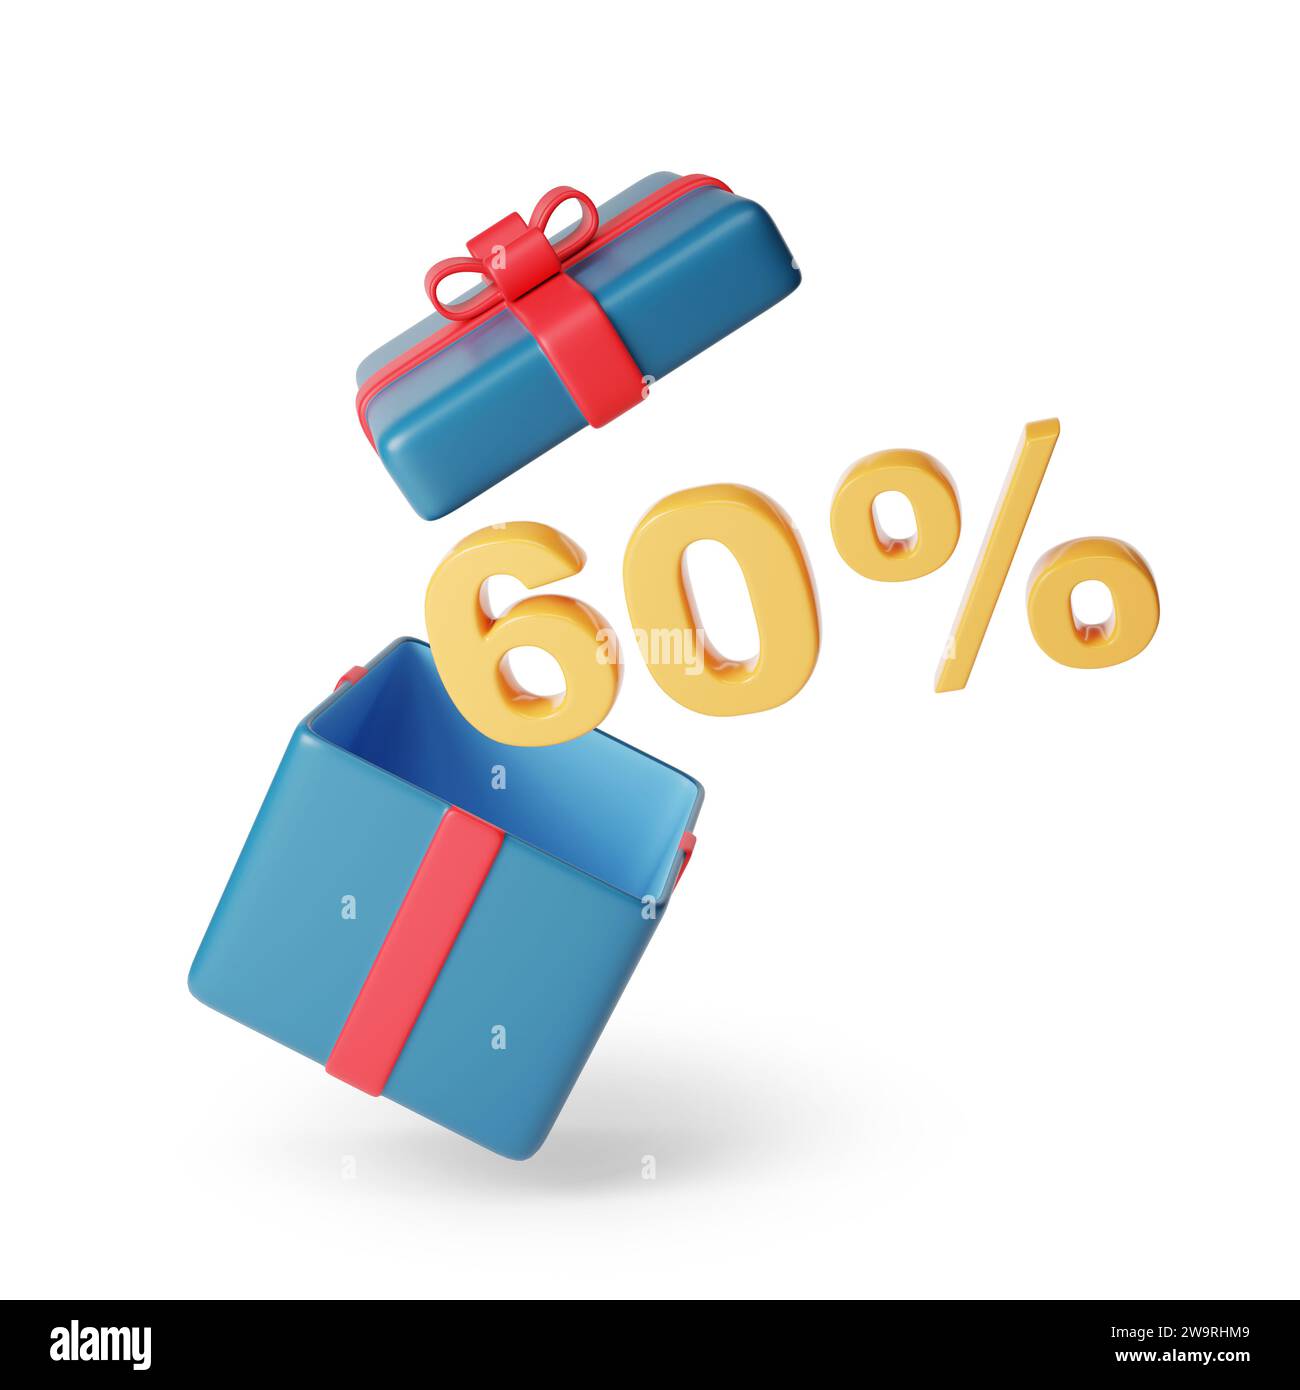 60% di testo solido proveniente da una confezione regalo isolata su sfondo bianco. illustrazione 3d. Foto Stock